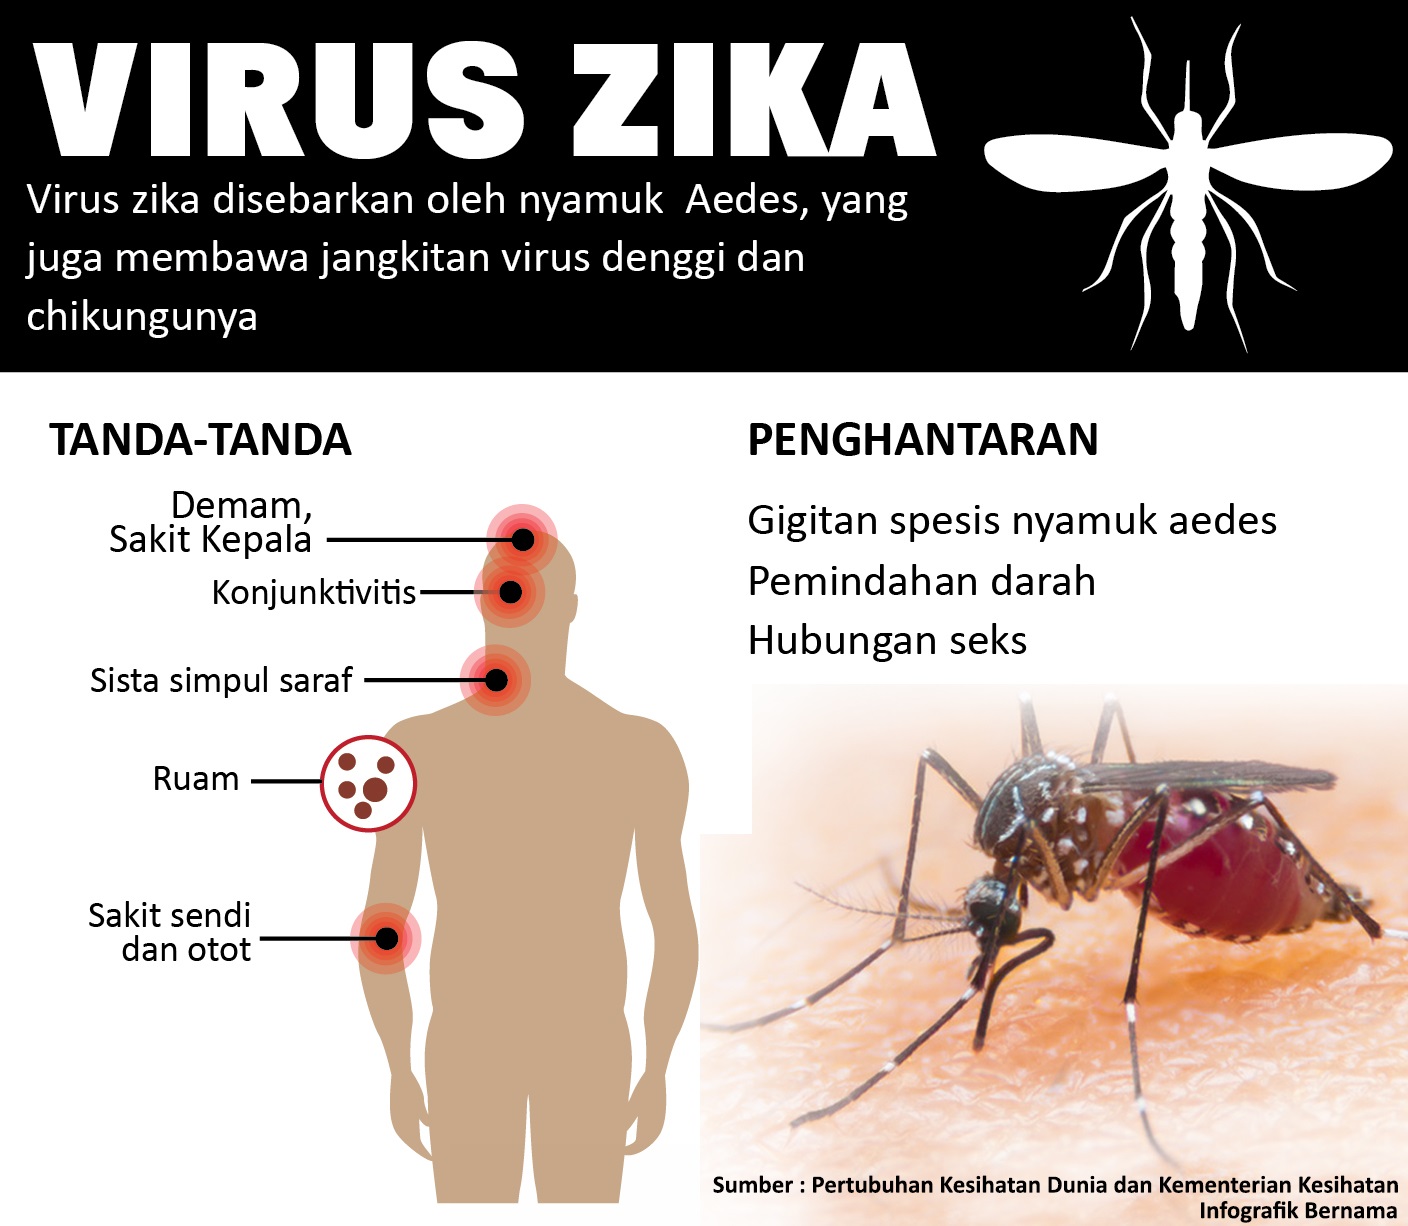 5 Perkara yang perlu anda tahu mengenai Virus Zika 